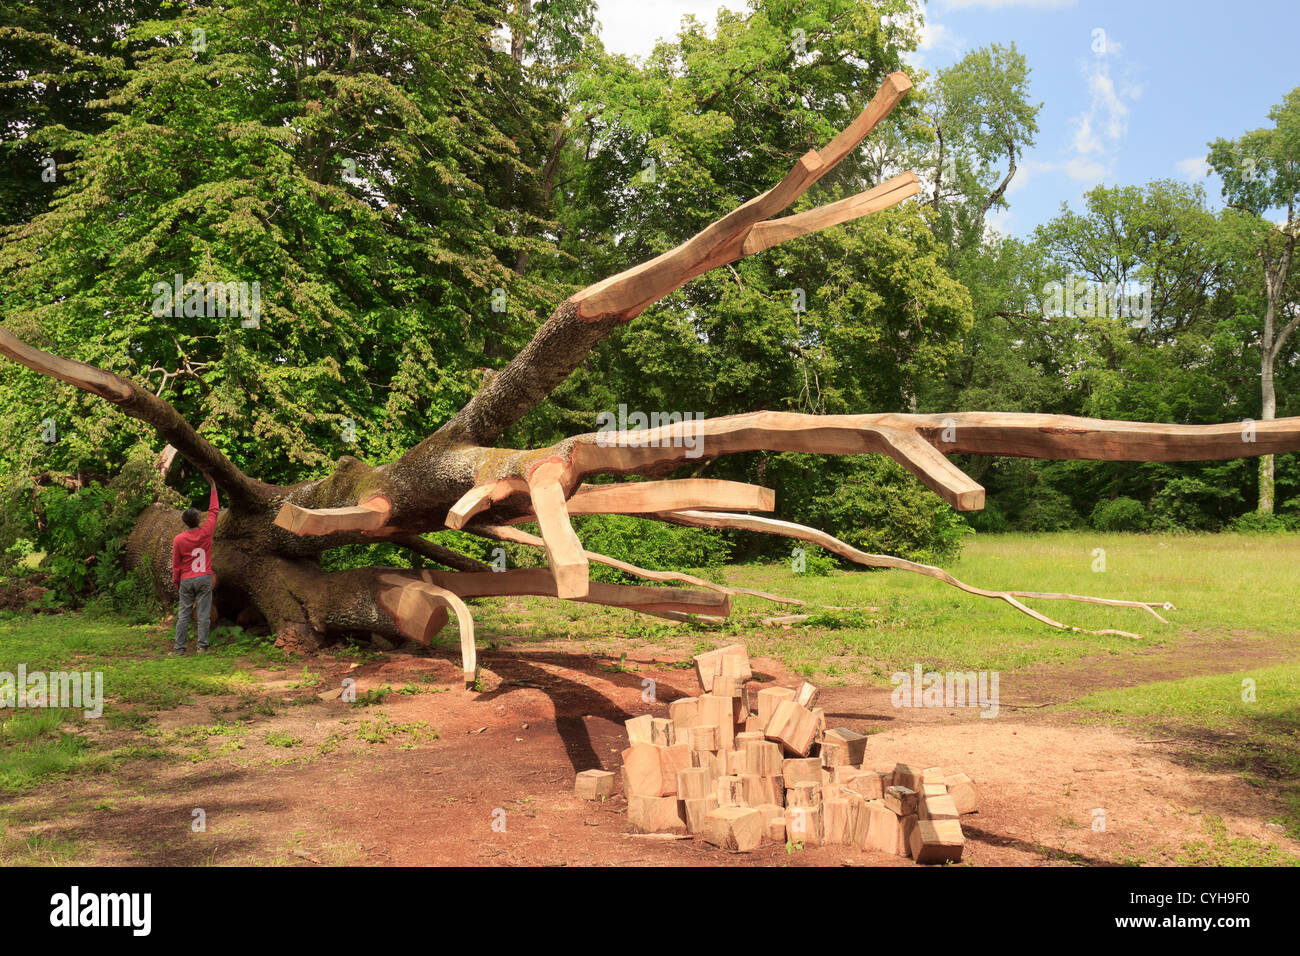 La France, de l'Arboretum des barres ou Arbofolia, Le chêne hongrois au sol et sculpté par William Costel. Banque D'Images